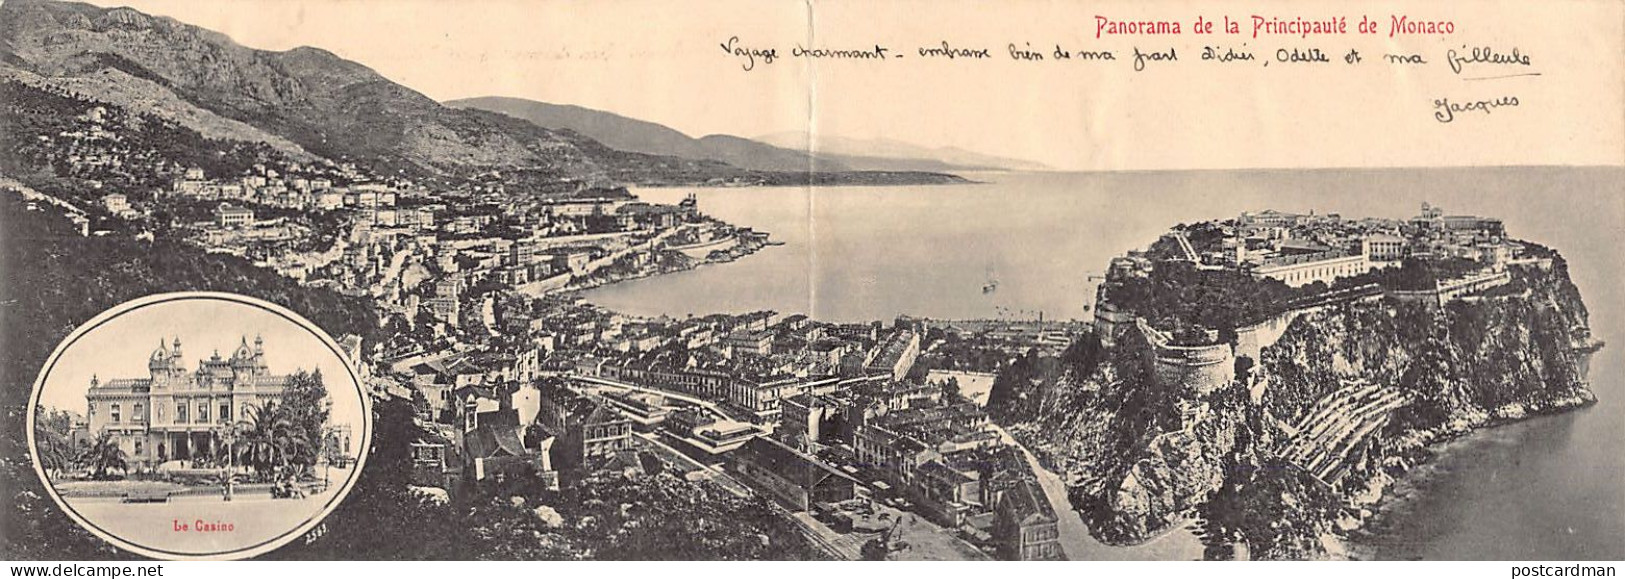 Panorama De La Principauté De Monaco - Le Casino - CARTE DOUBLE PANORAMIQUE - Multi-vues, Vues Panoramiques